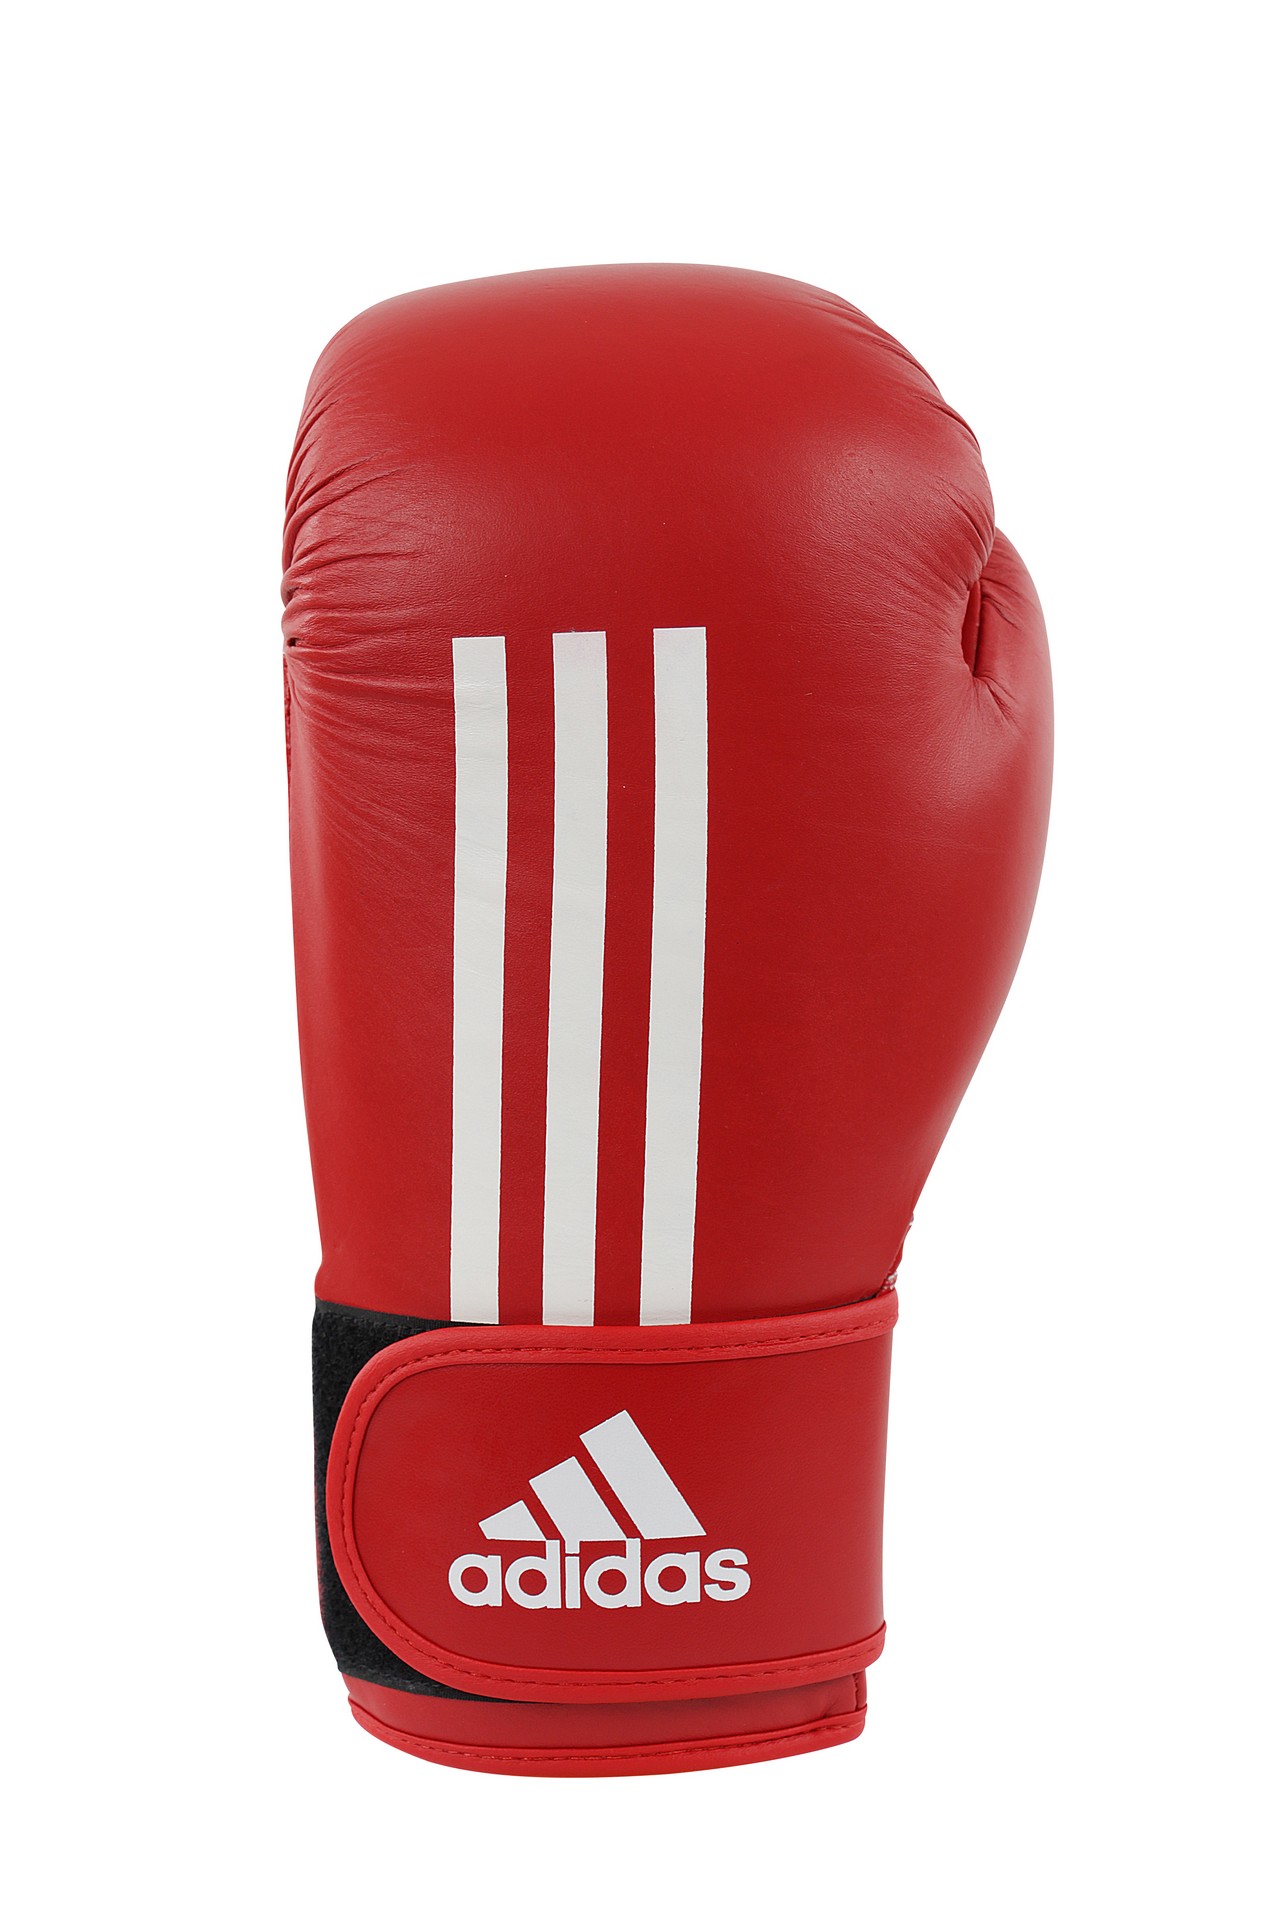 Перчатки бокс Energy ПУ 551. Adidas Boxing. Адидас боксерская экипировка флаг Ирландии. Адидас бокс